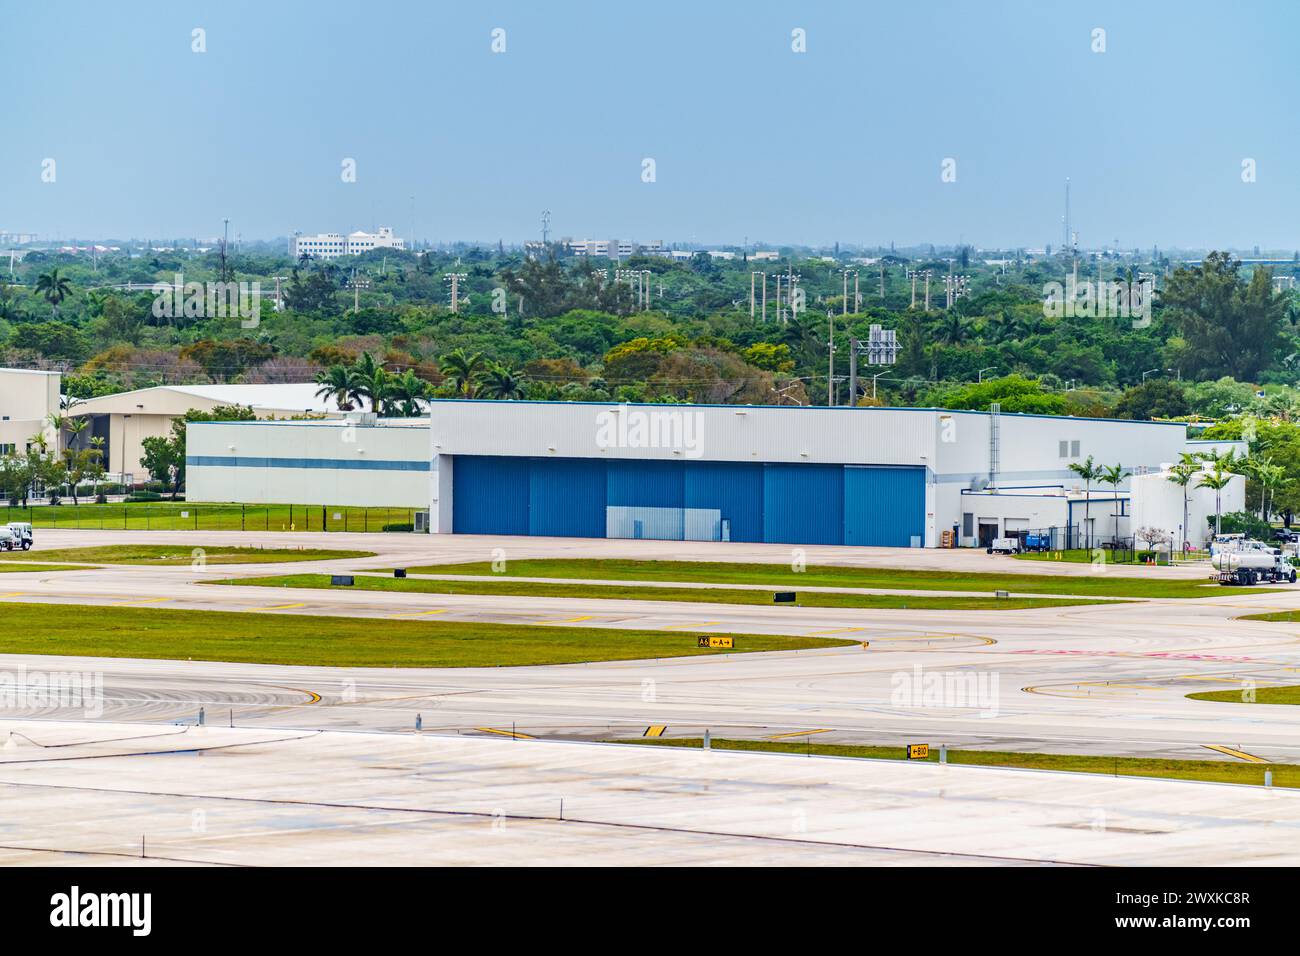 Les logos des hangars à jets privés à l'aéroport ont été retirés Banque D'Images